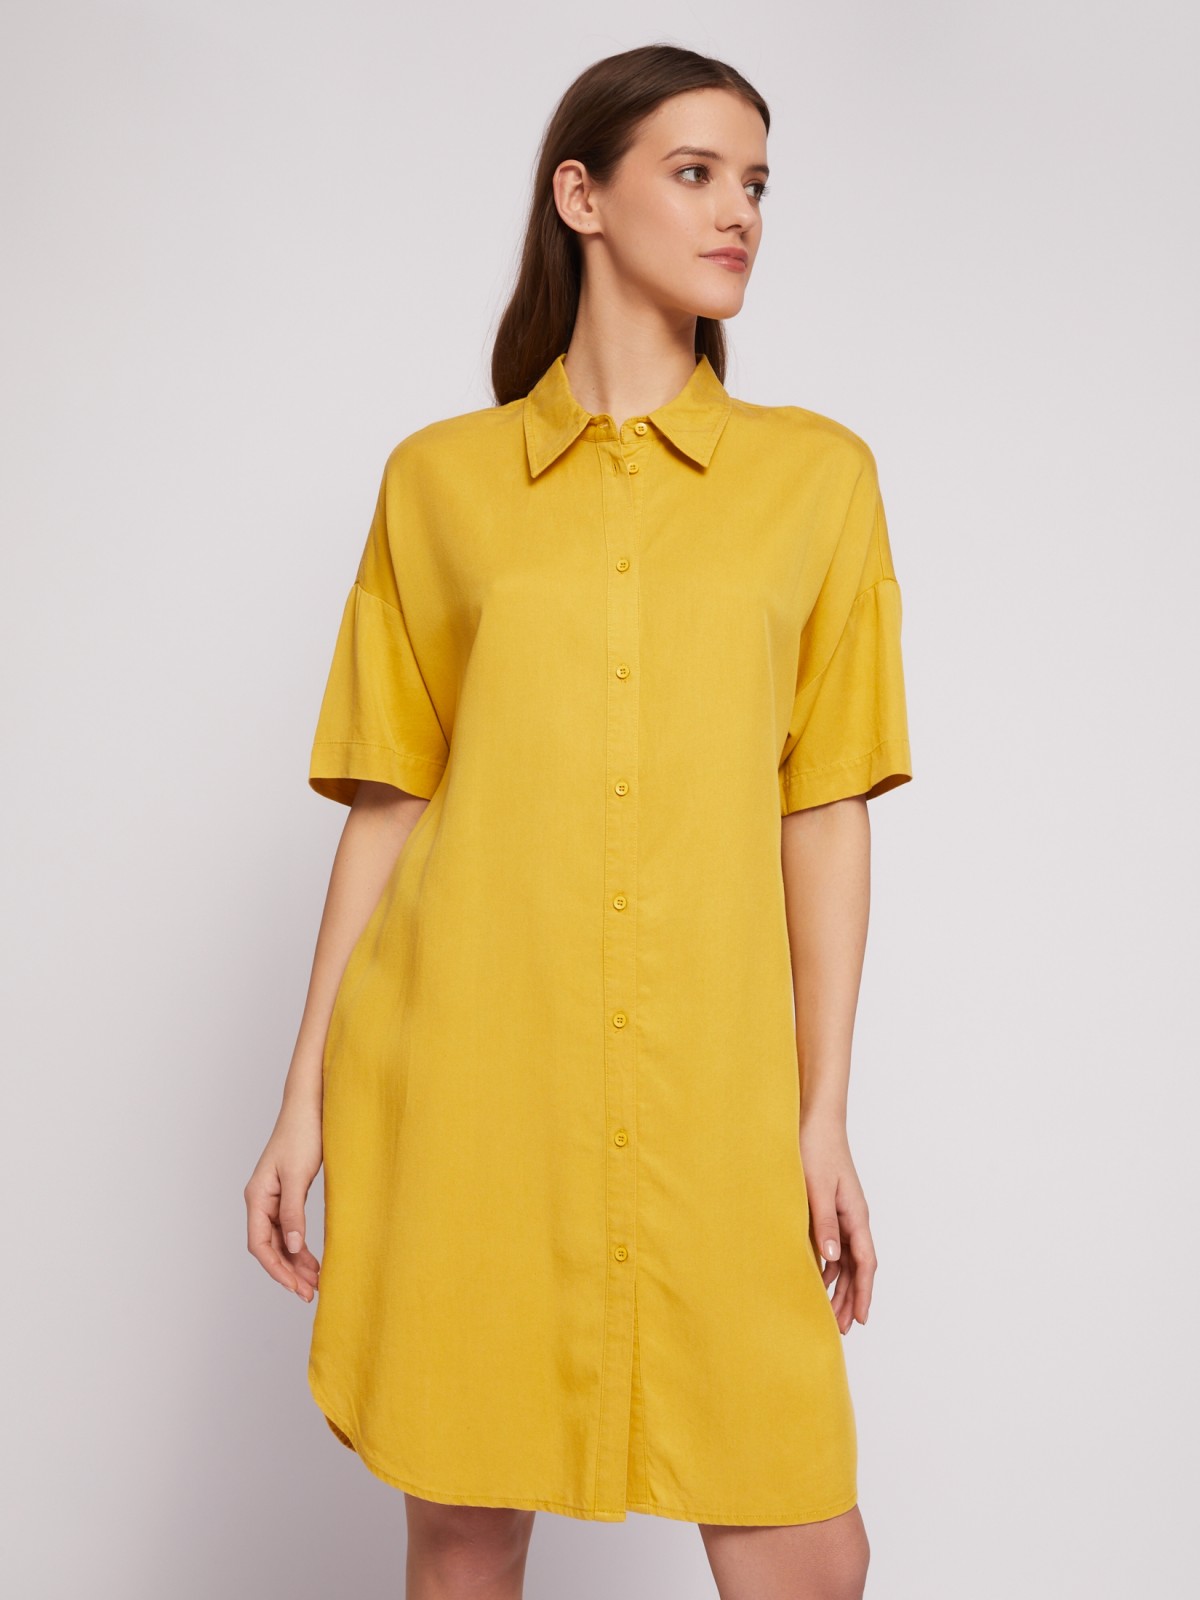 Платье-рубашка мини из лиоцелла на пуговицах zolla 02421827Y053, цвет горчичный, размер S